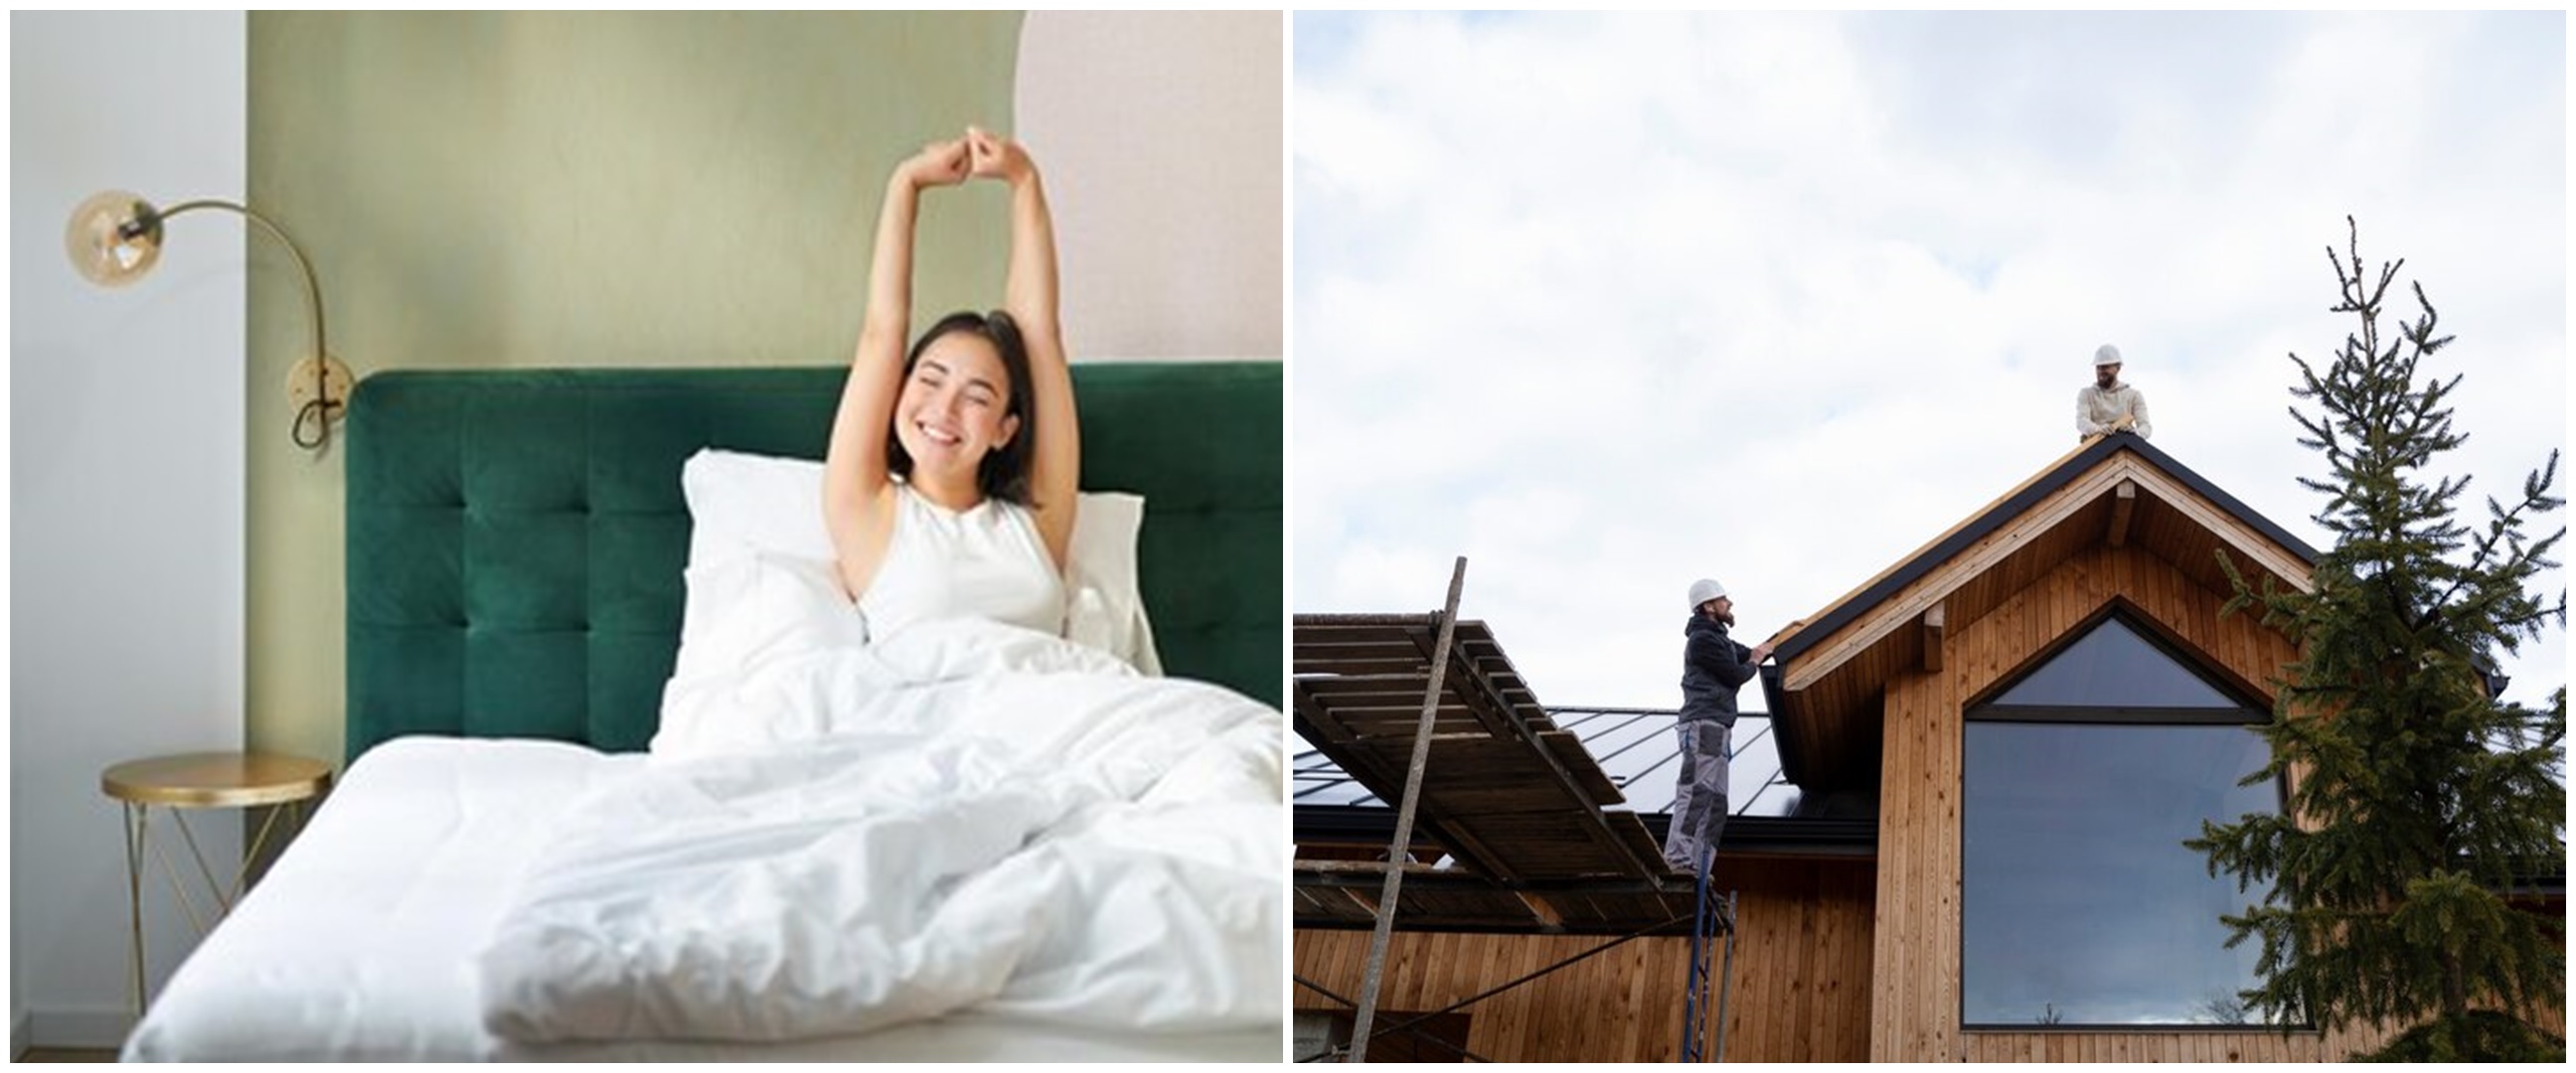 9 Arti mimpi atap rumah bocor menurut psikologi, bisa jadi adanya kabar buruk